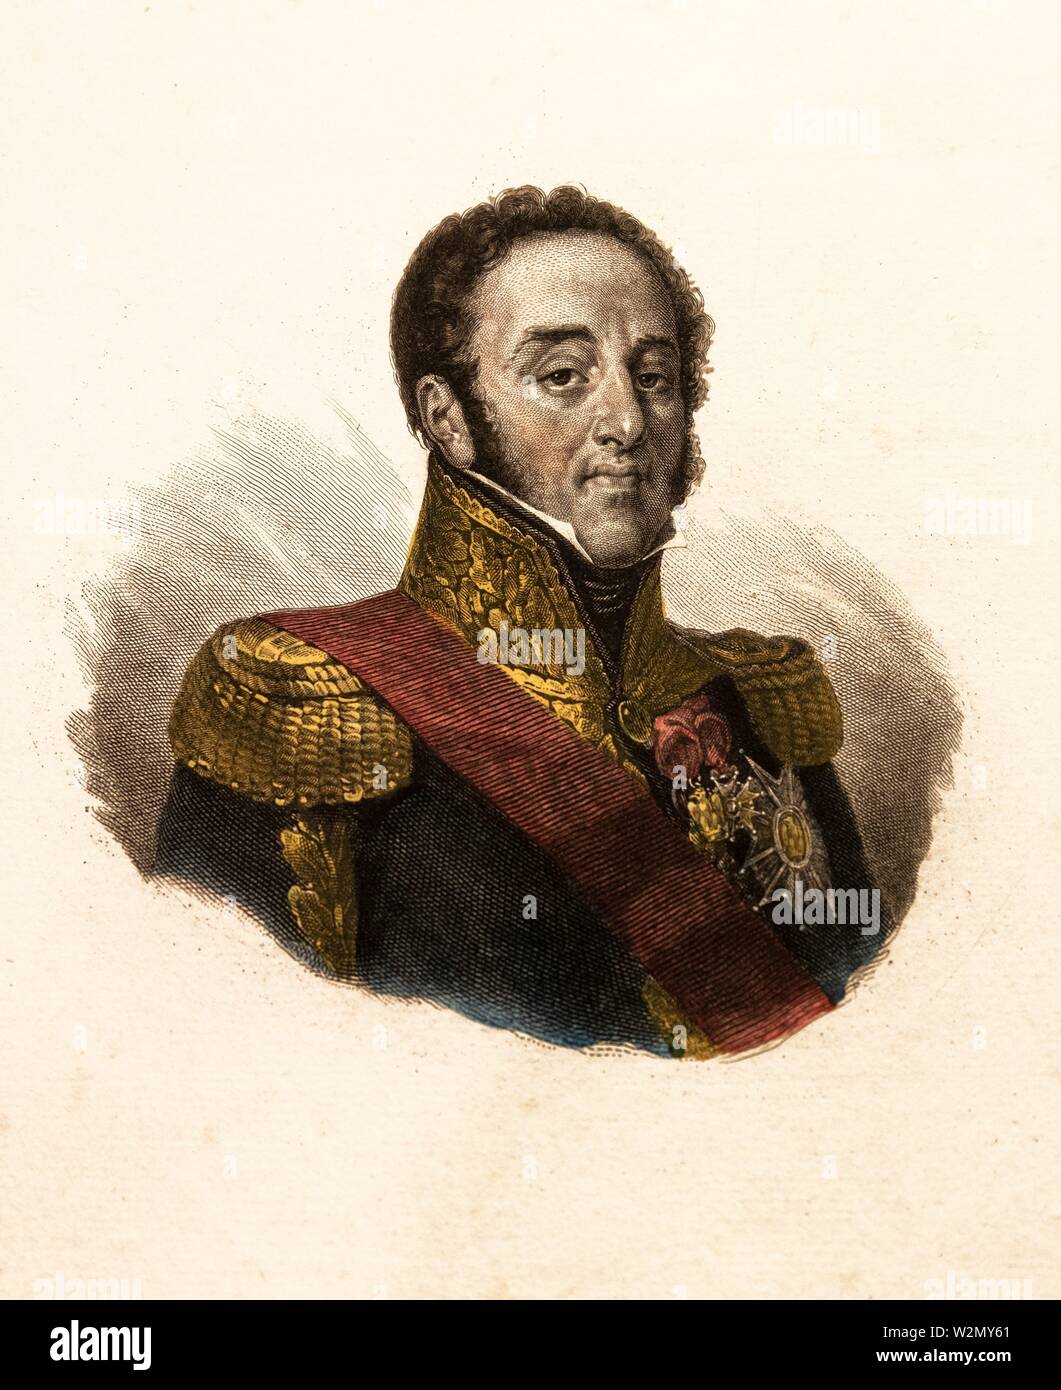 Louis-Gabriel Suchet.Louis-Gabriel Suchet (2 de marzo de 1770-3 de enero de 1826), duque de Albufera , fue un Mariscal del imperio francés y uno de los más Foto de stock